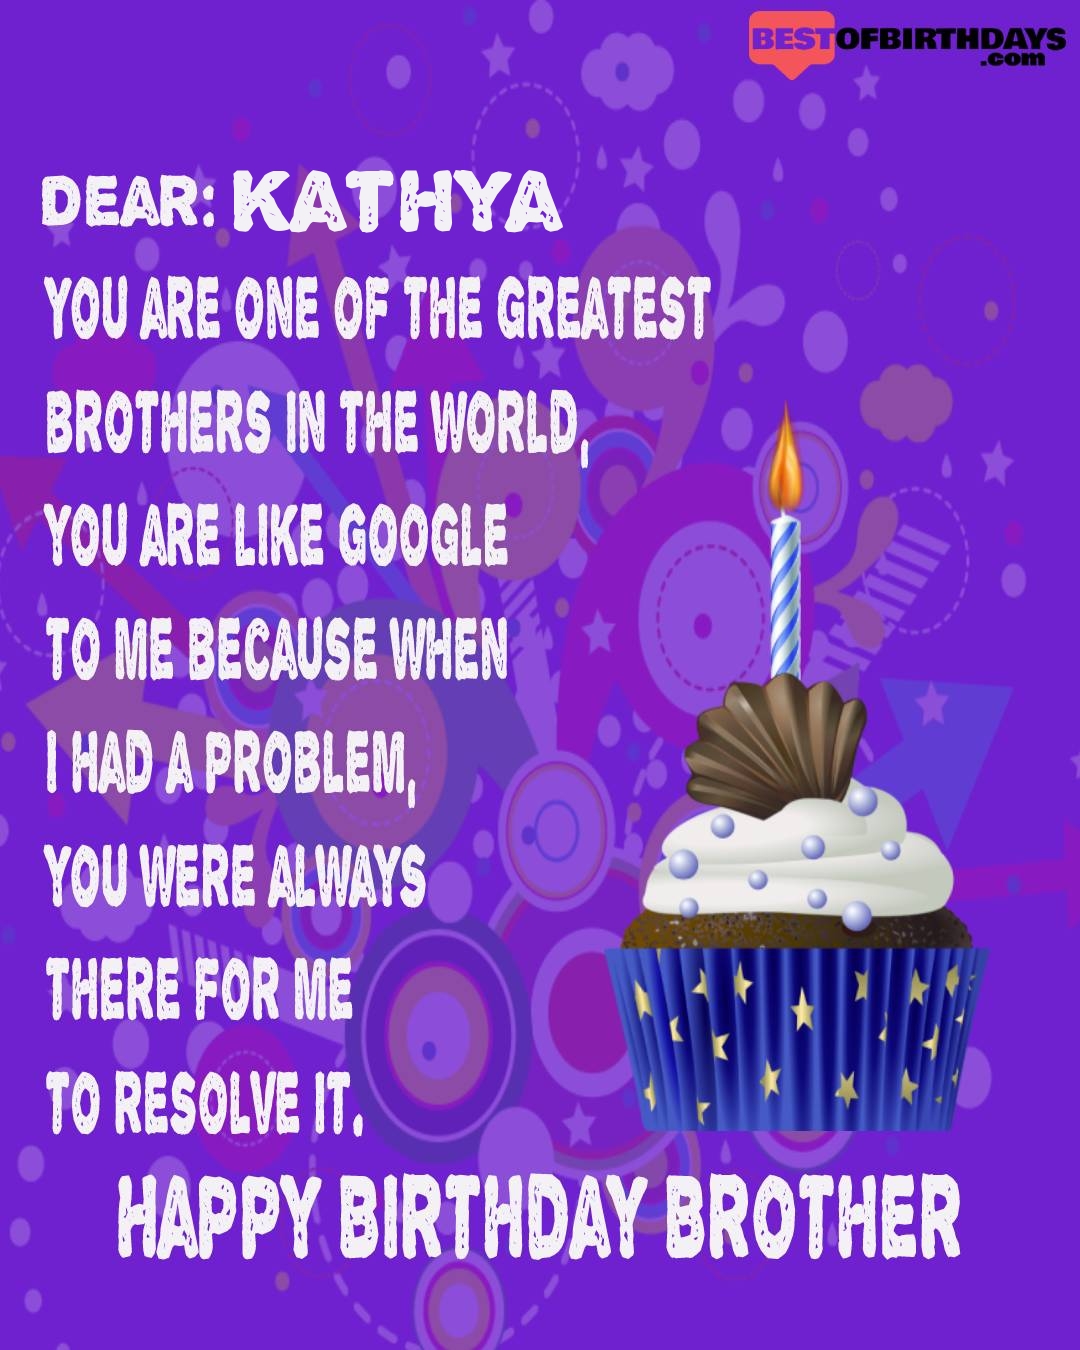 Happy birthday kathya bhai brother bro